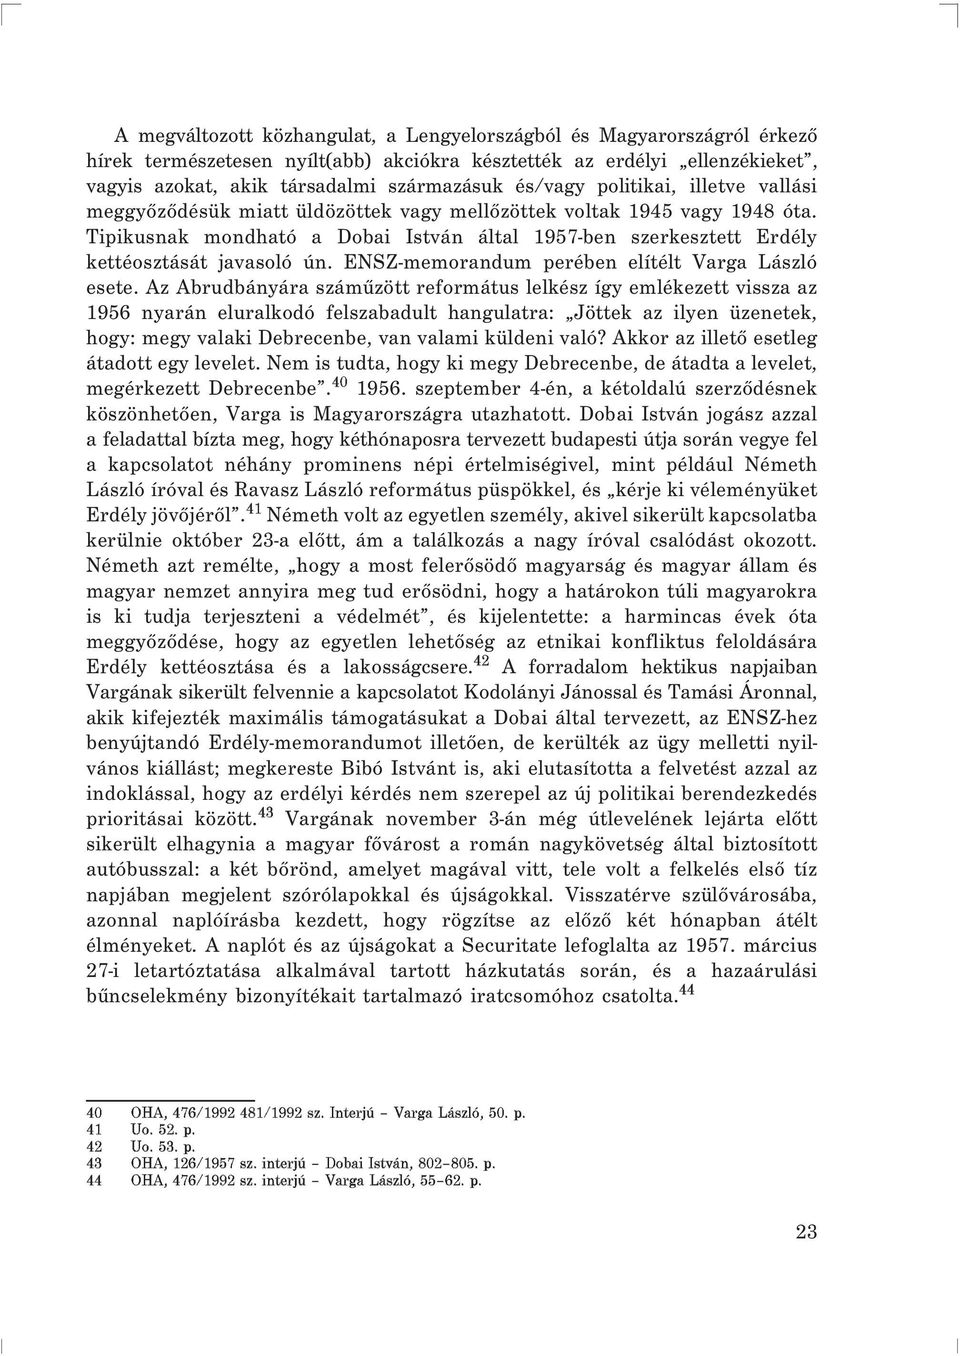 Tipikusnak mondható a Dobai István által 1957-ben szerkesztett Erdély kettéosztását javasoló ún. ENSZ-memorandum perében elítélt Varga László esete.